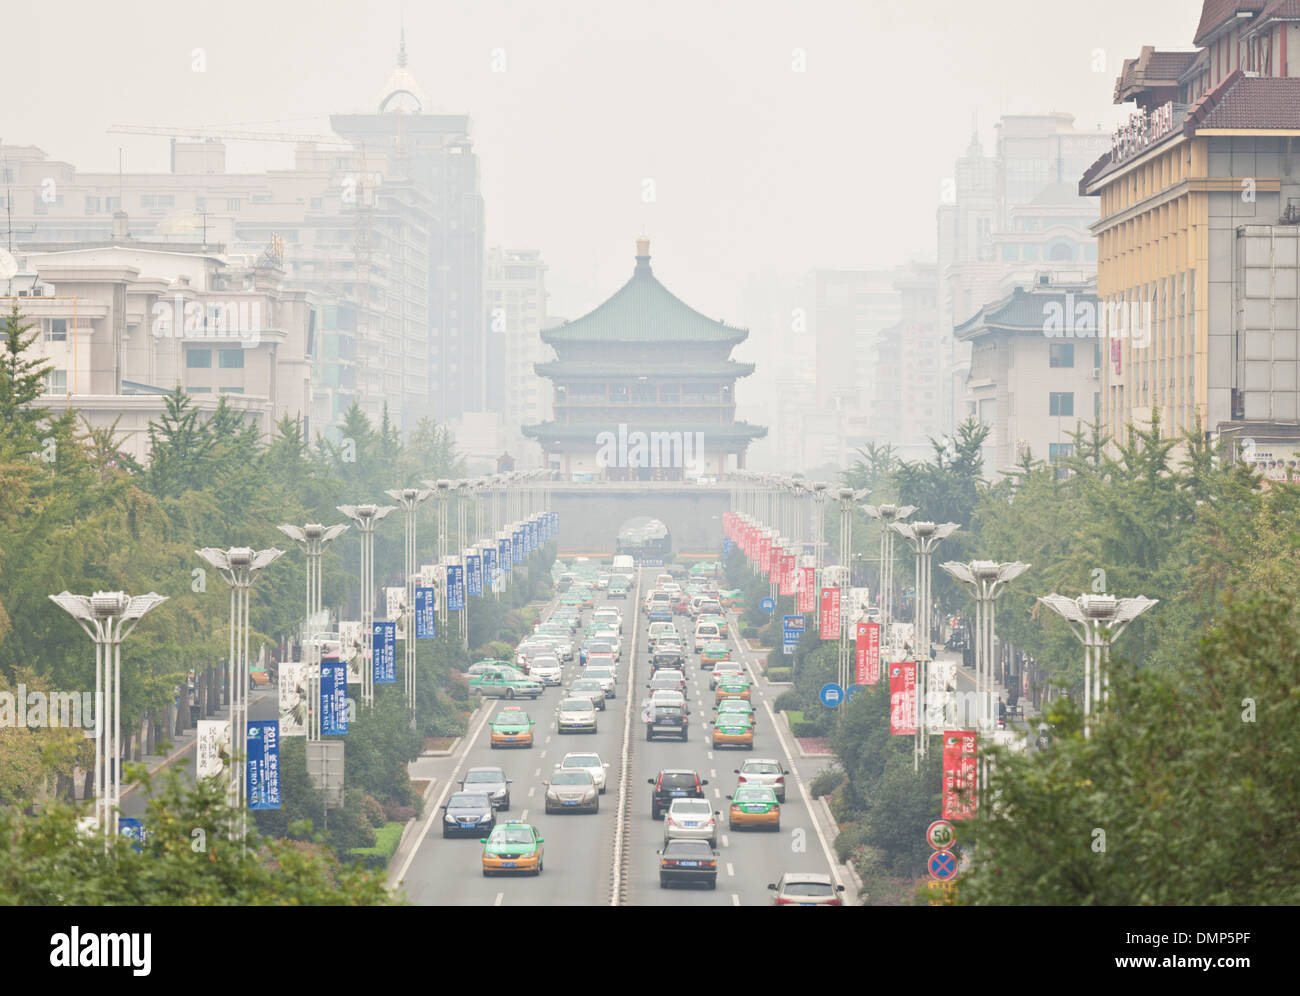 Bell Tower sur une chaude journée brumeuse du centre-ville de Xian dans la province du Shaanxi, Chine, République populaire de Chine, l'Asie Banque D'Images